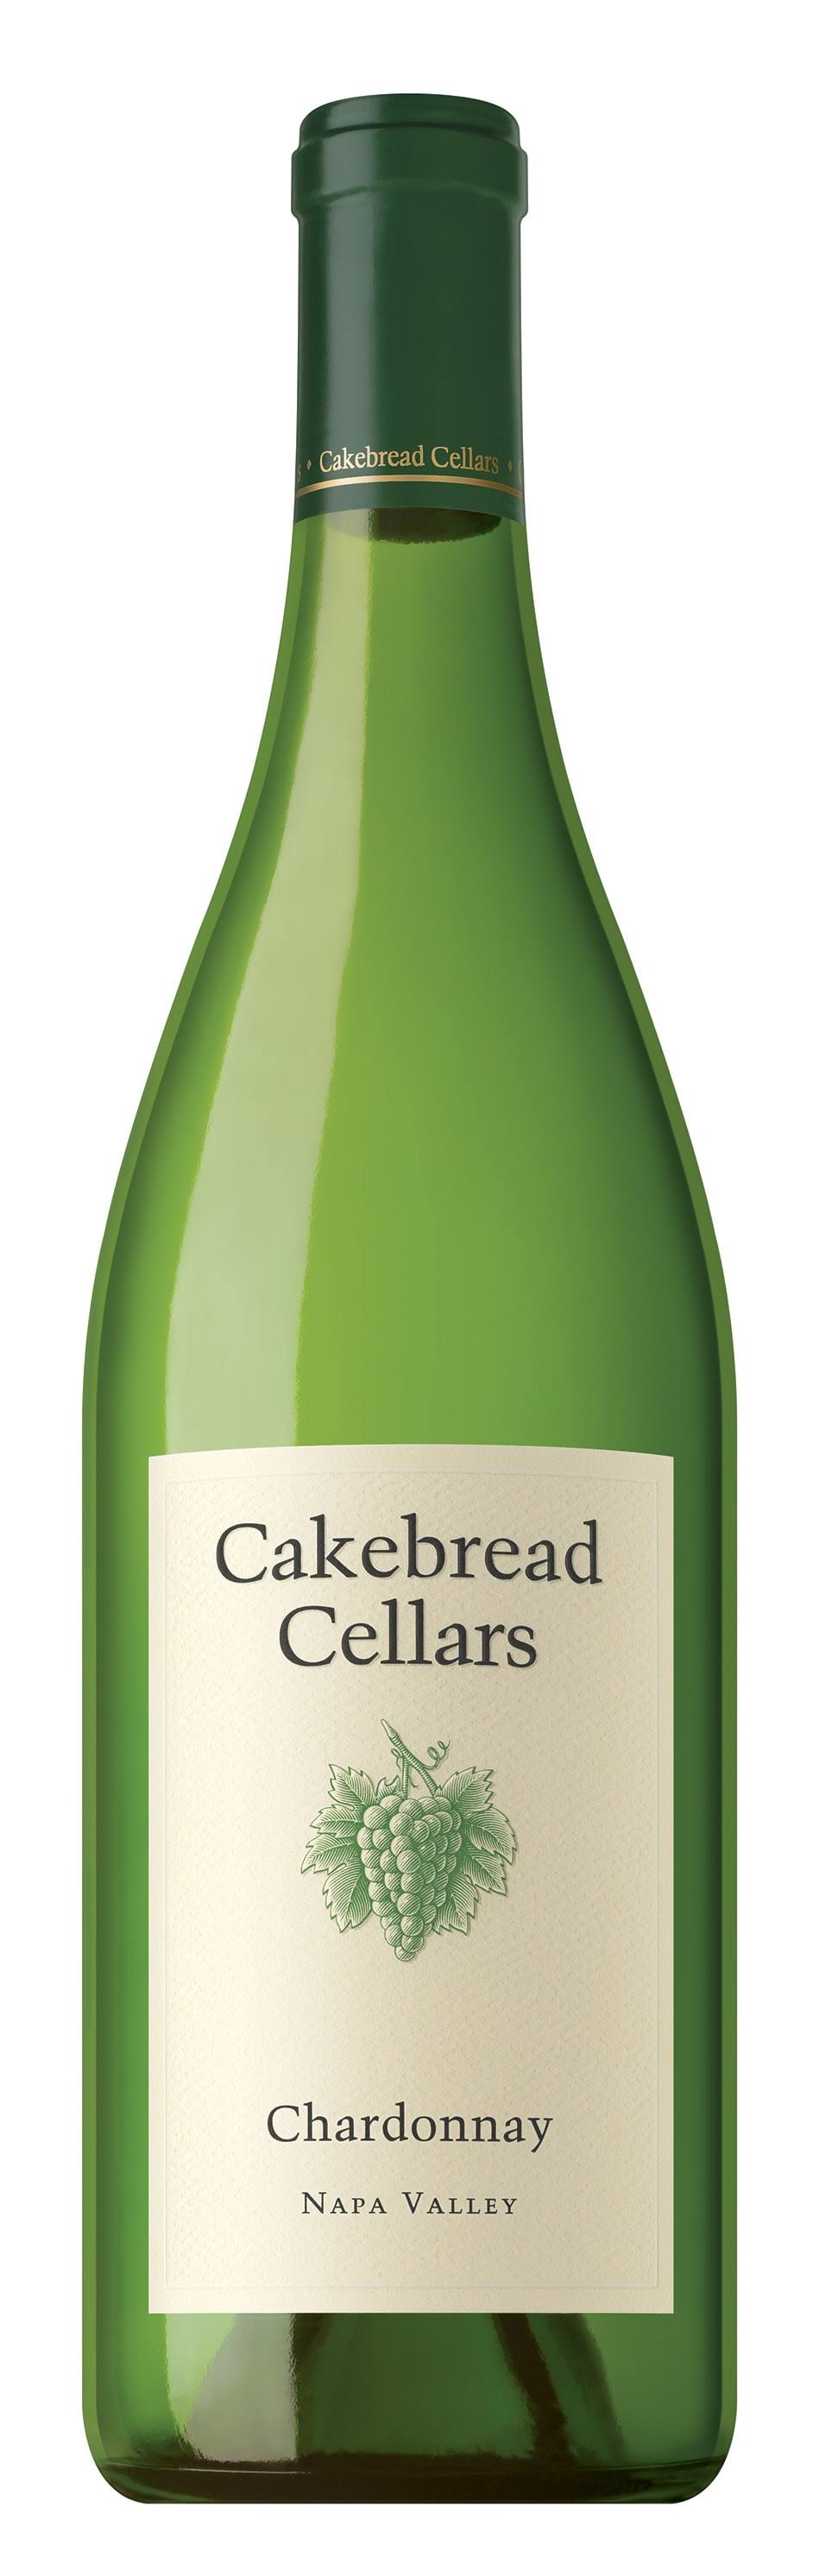 Cakebread Cellars Chardonnay NAPA Valley 2020